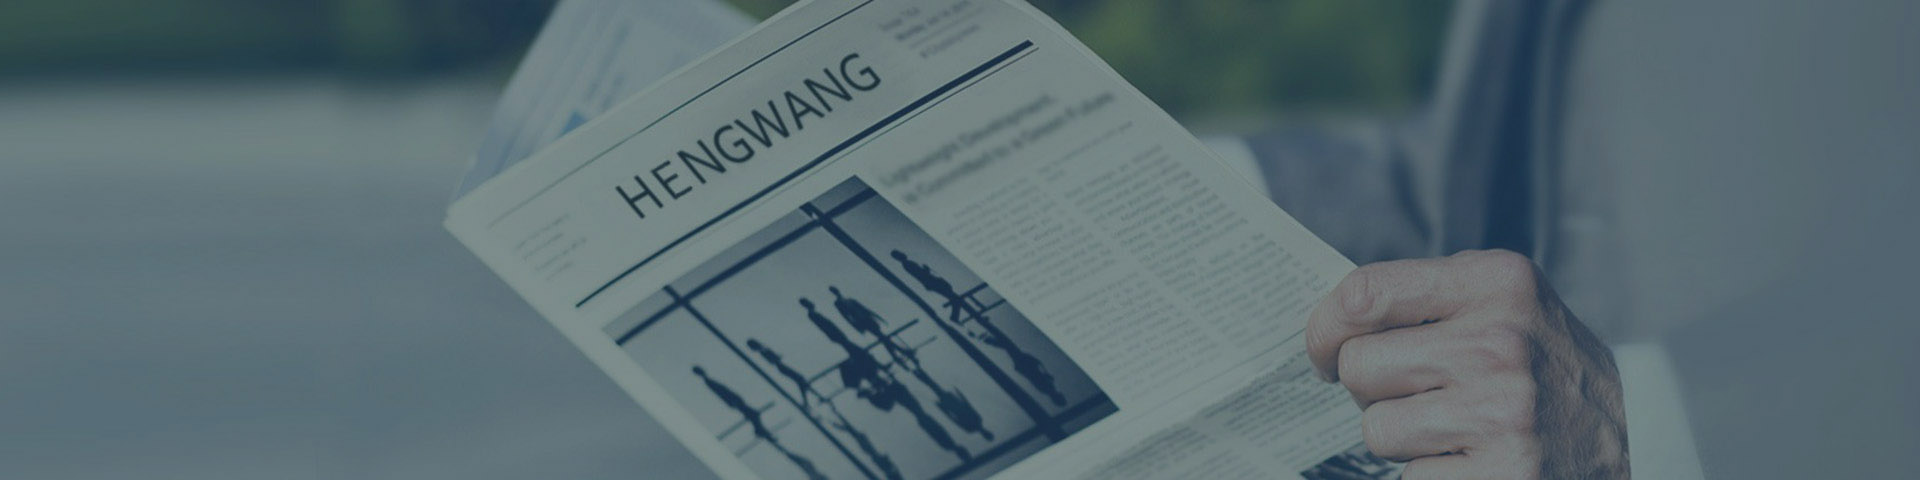 Hengwang News